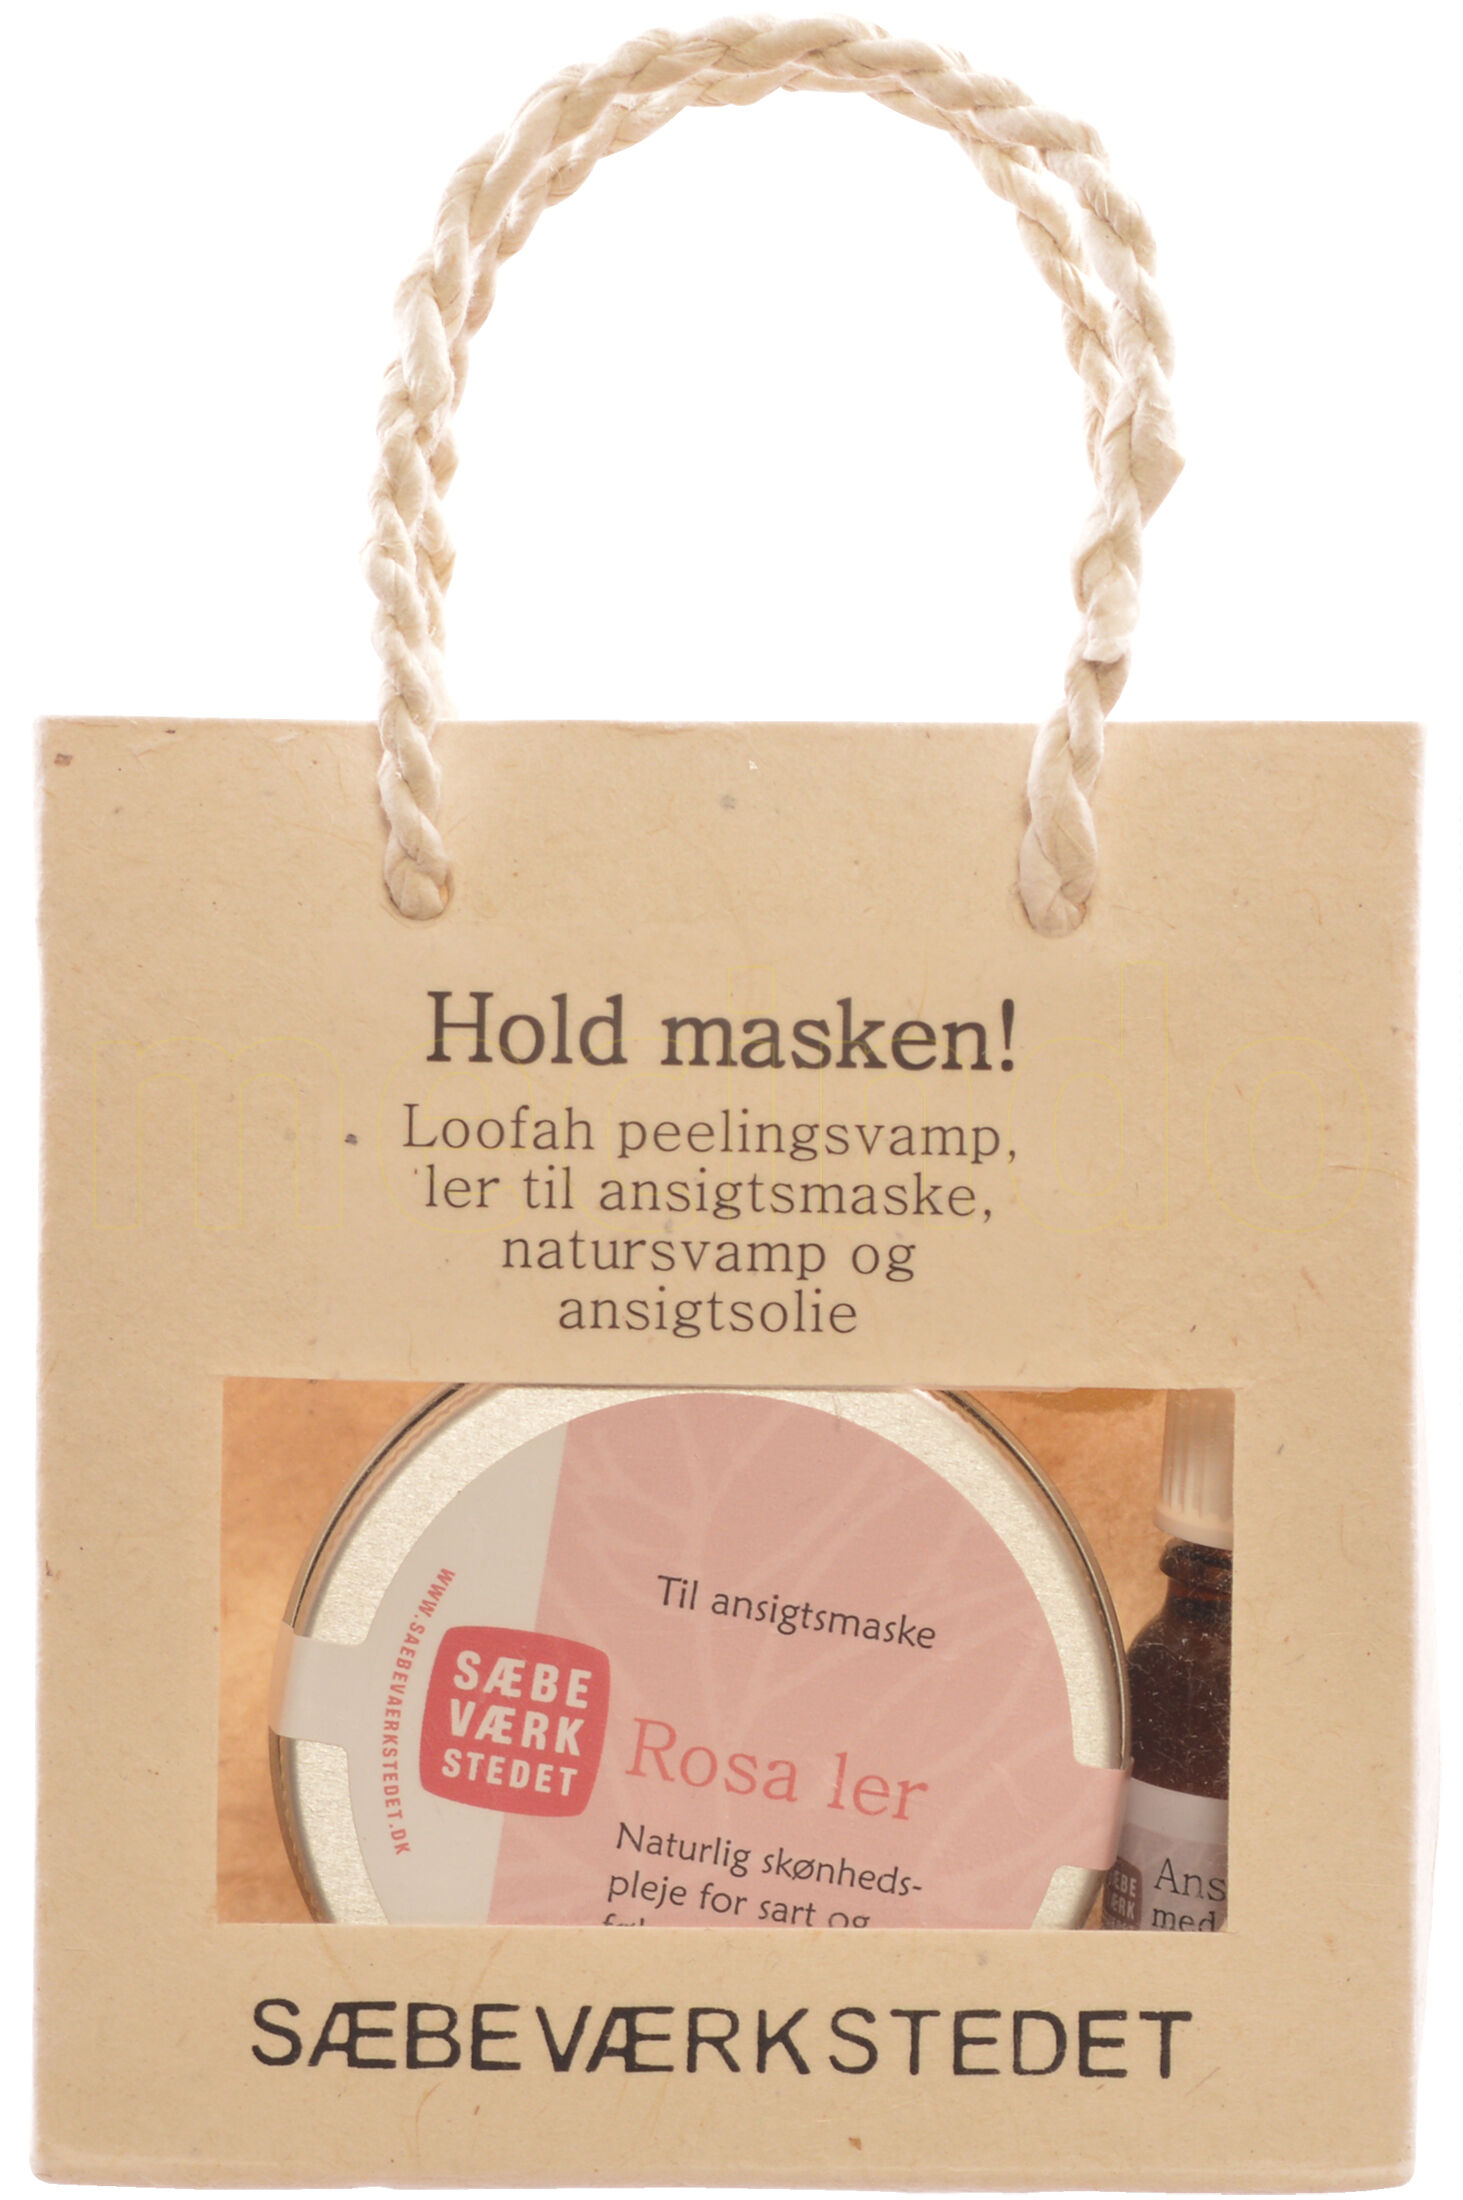 Sæbeværkstedet Hold masken gavepose indh. rosa ler, ansigtsolie,natursvamp,peeling pad - 1 Pakke